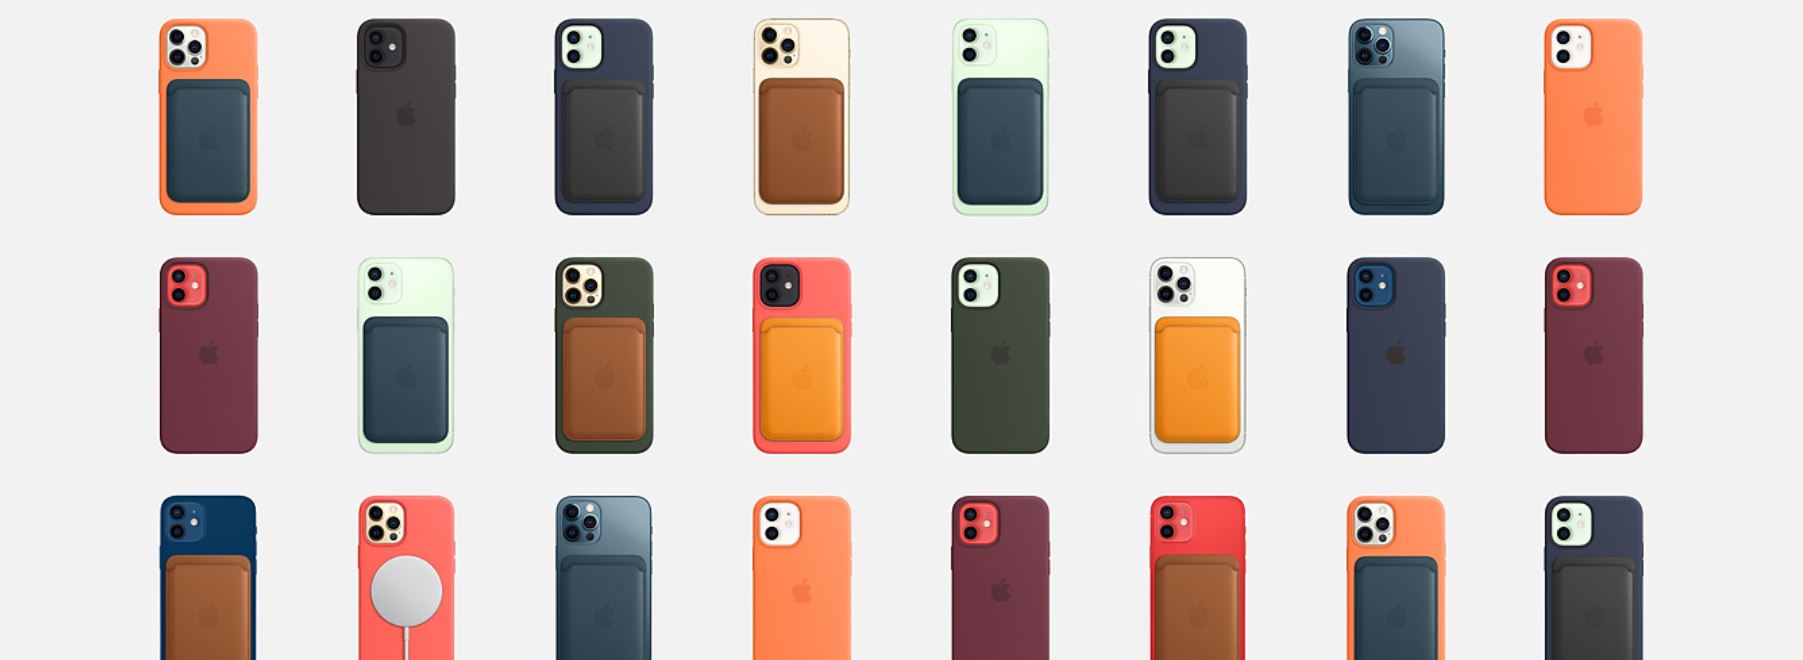 כיסוי מעור לאייפון 12 מיני עם iPhone 12 mini MagSafe - בצבעים מגוון